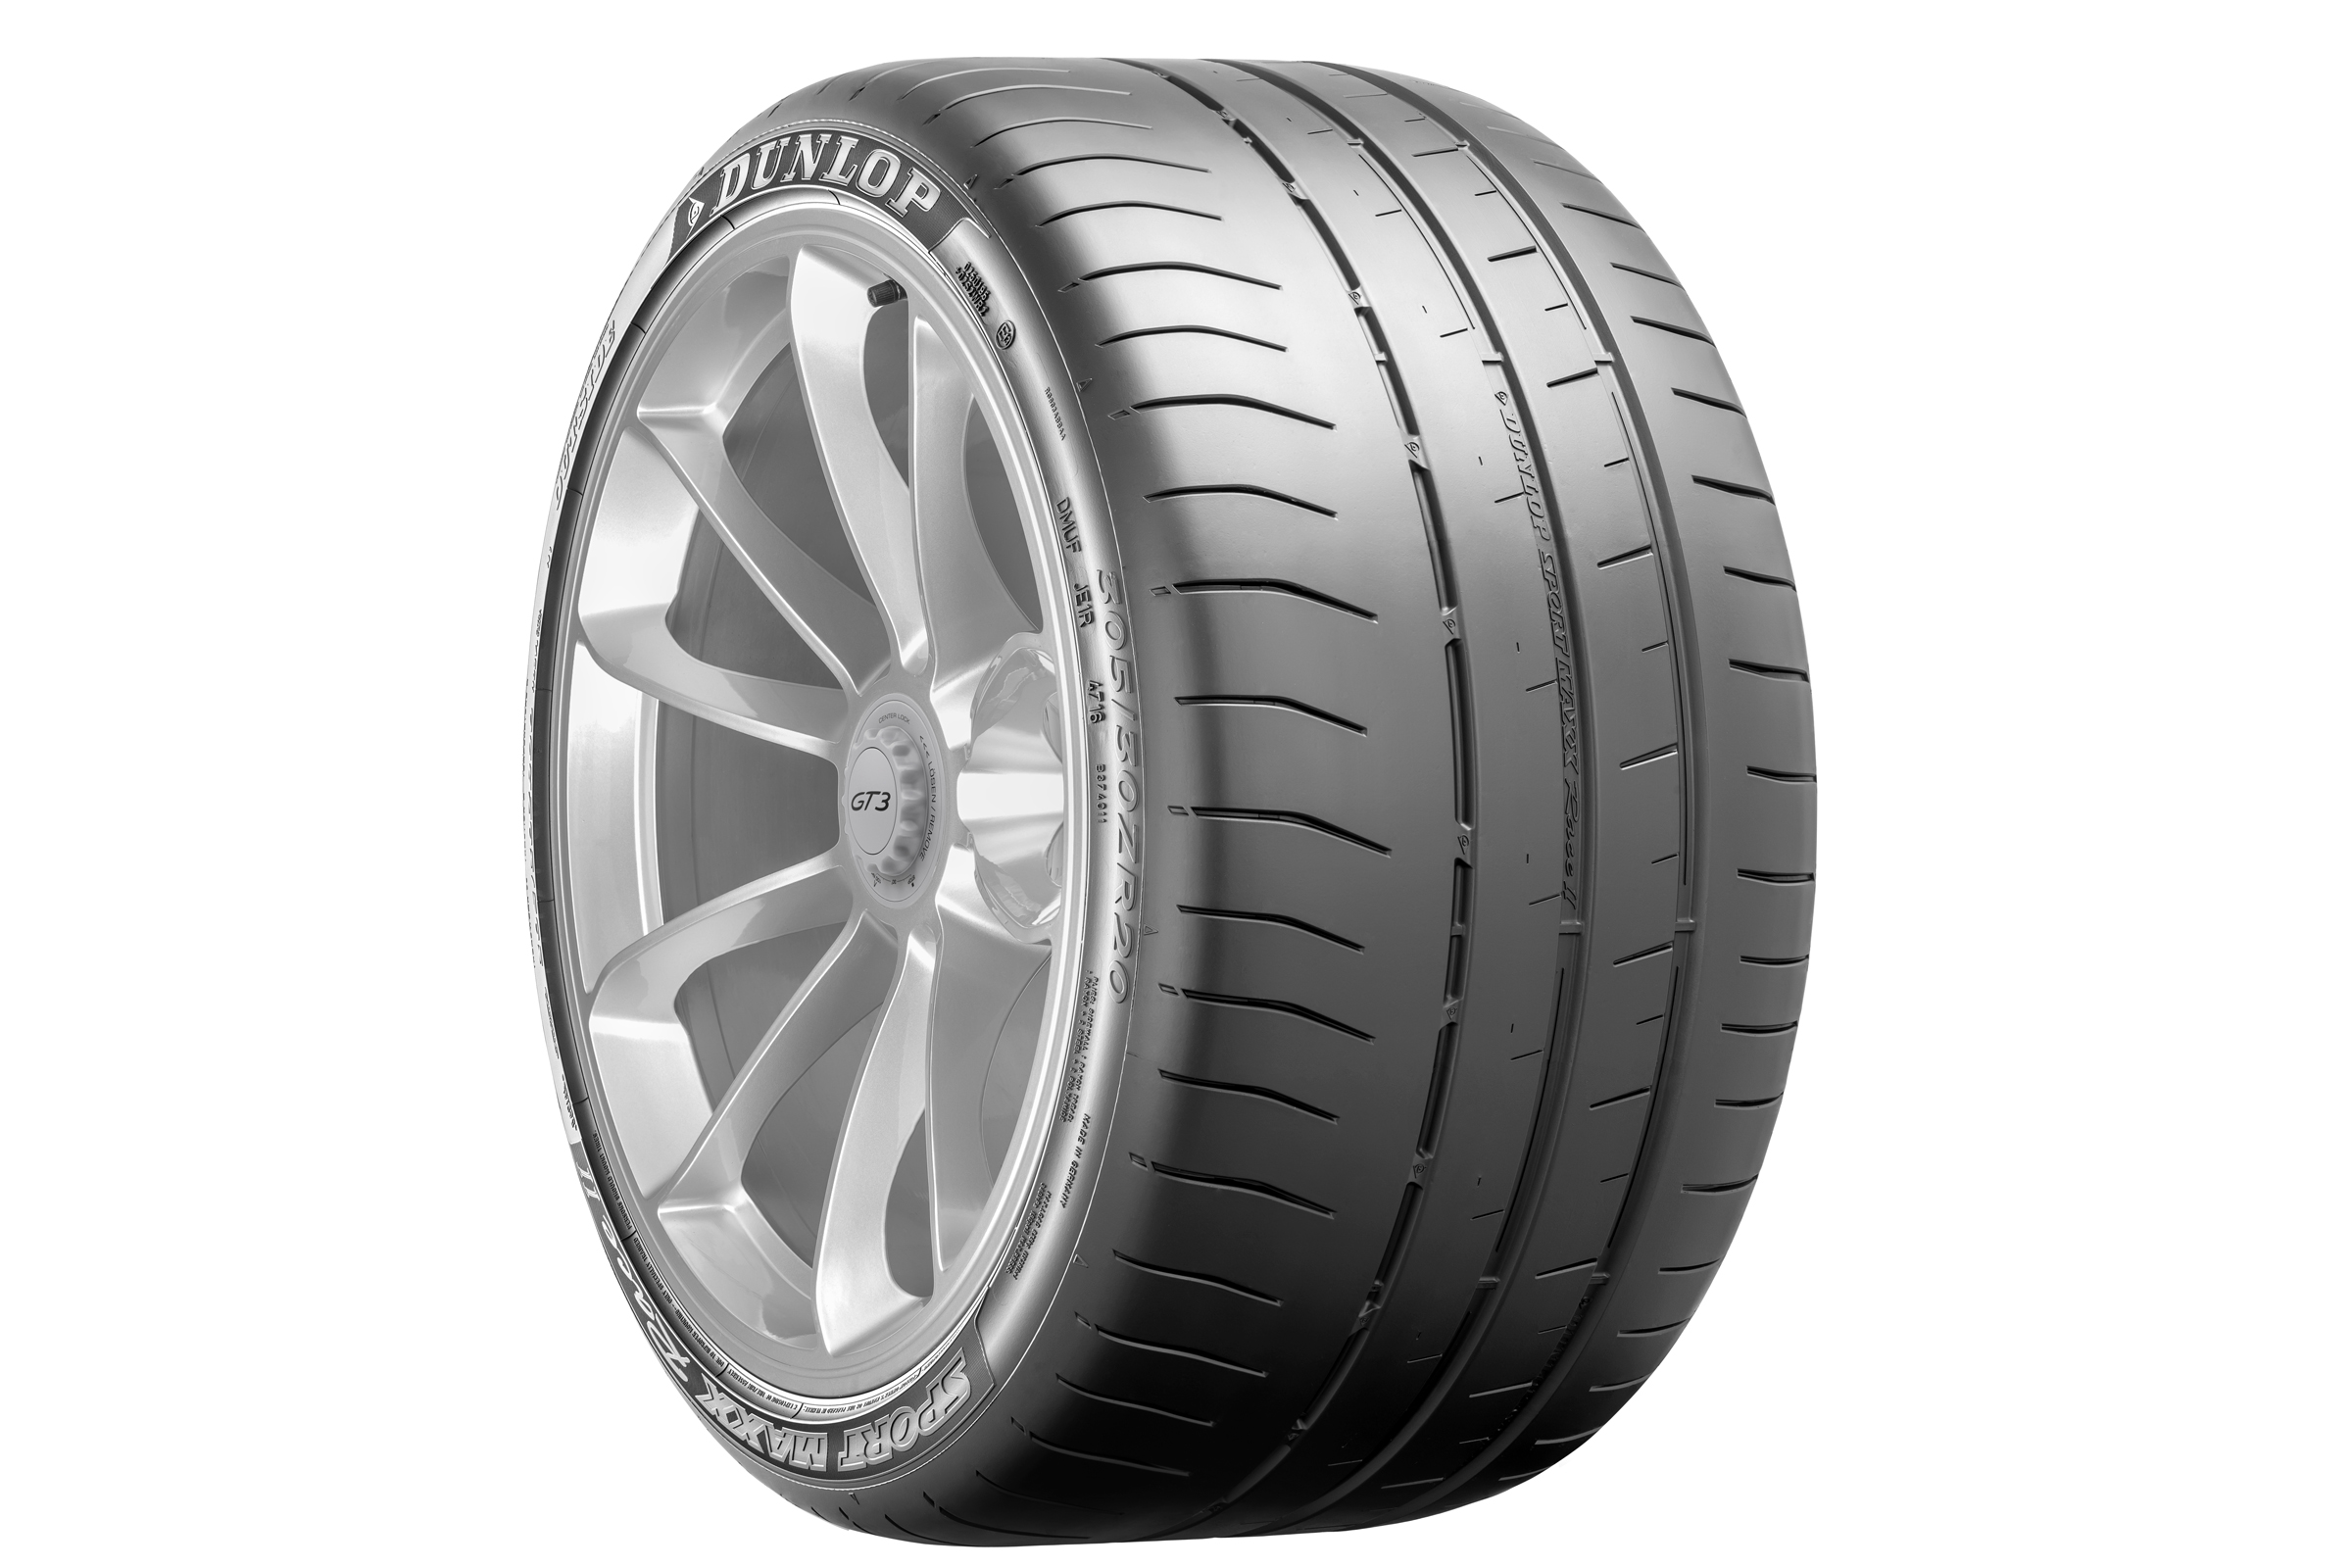 Dunlop Sport Maxx tyre | evo